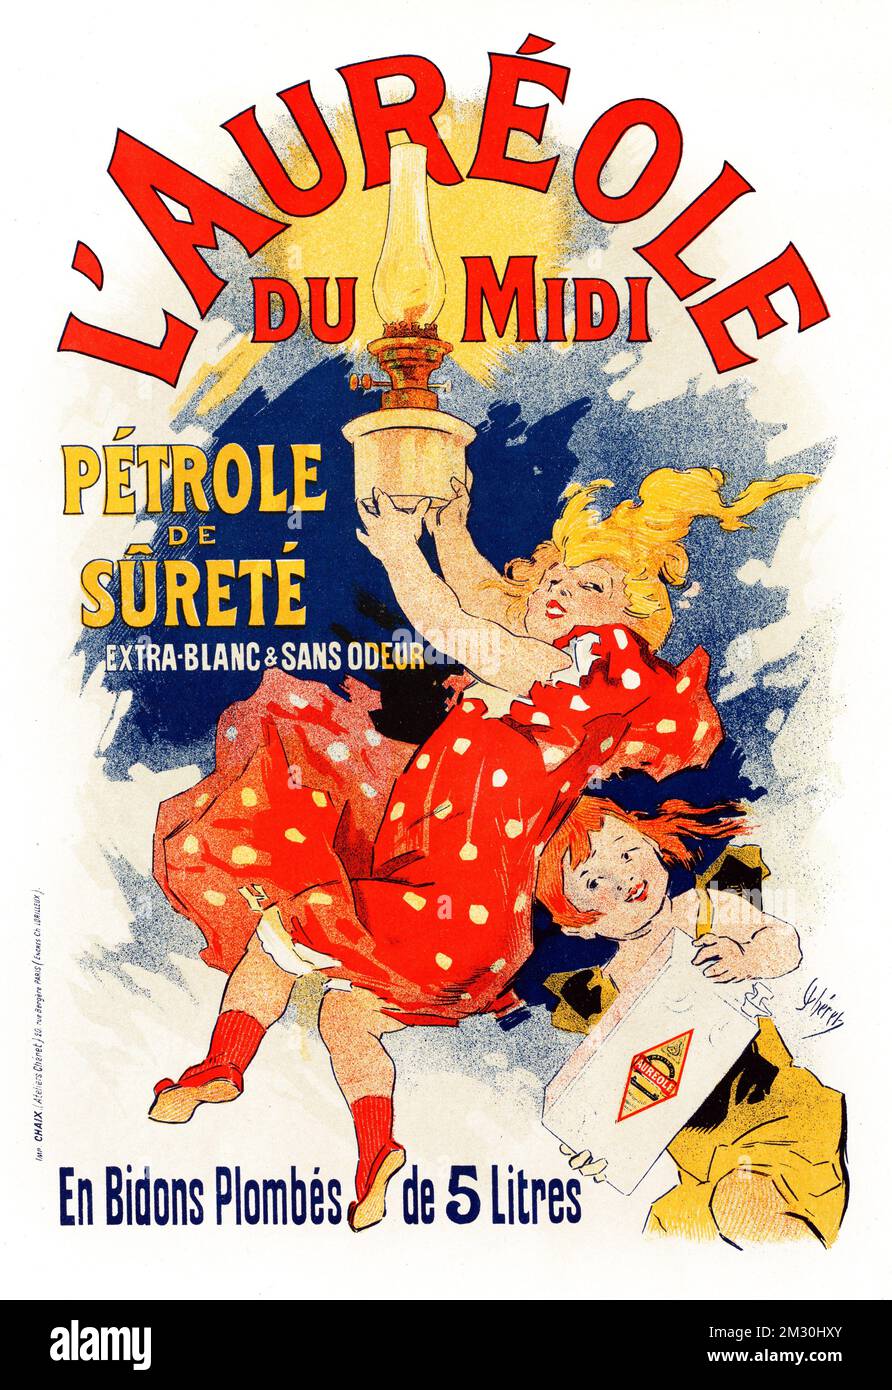 Affiche ancienne de Jules Chéret - l'aura de midi - 1893 - Belle époque - Art Nouveau Banque D'Images